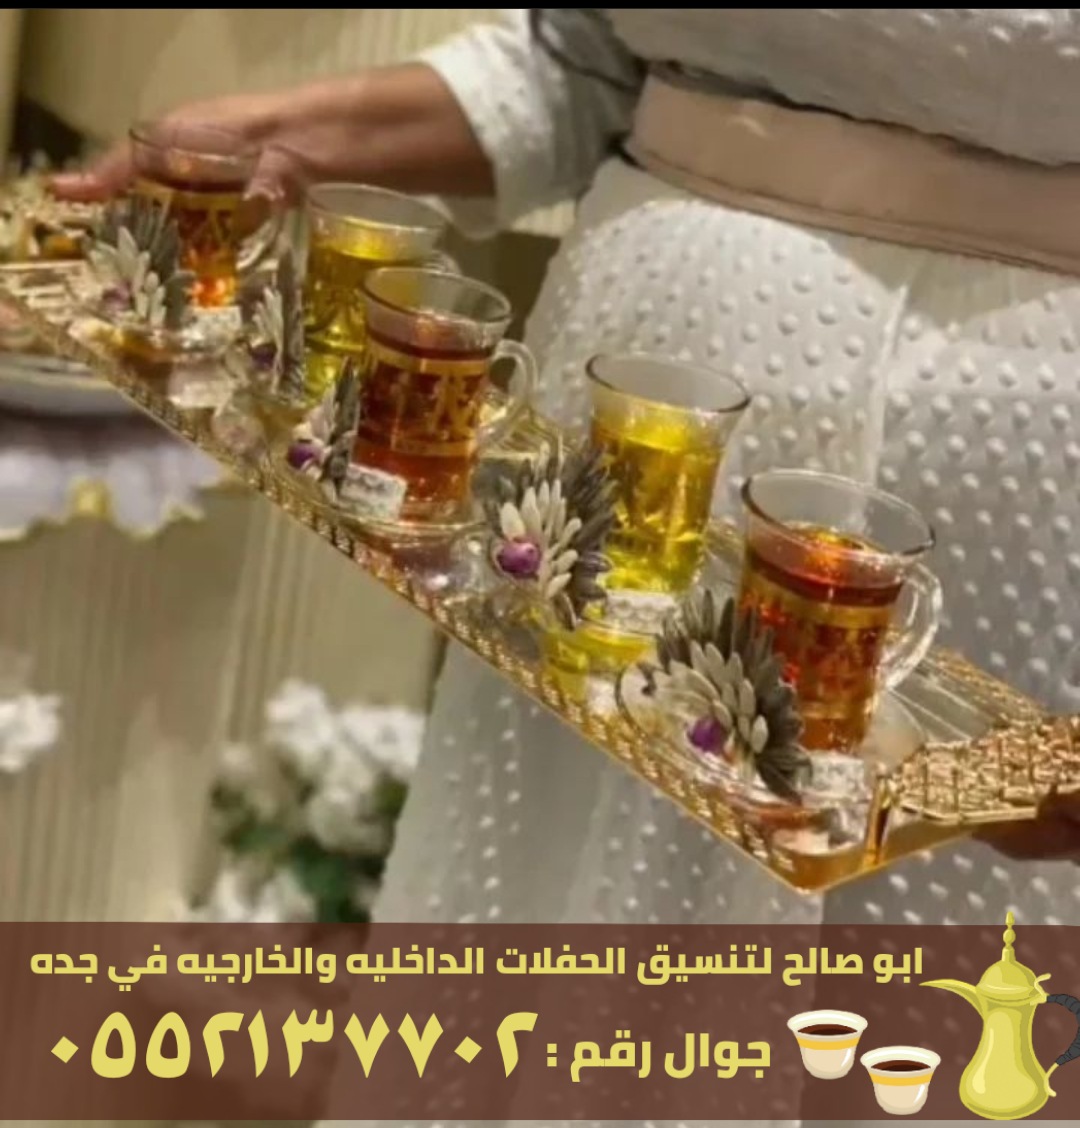 صبابابين قهوة رجال ونساء في جدة, 0552137702 P_24561guo28